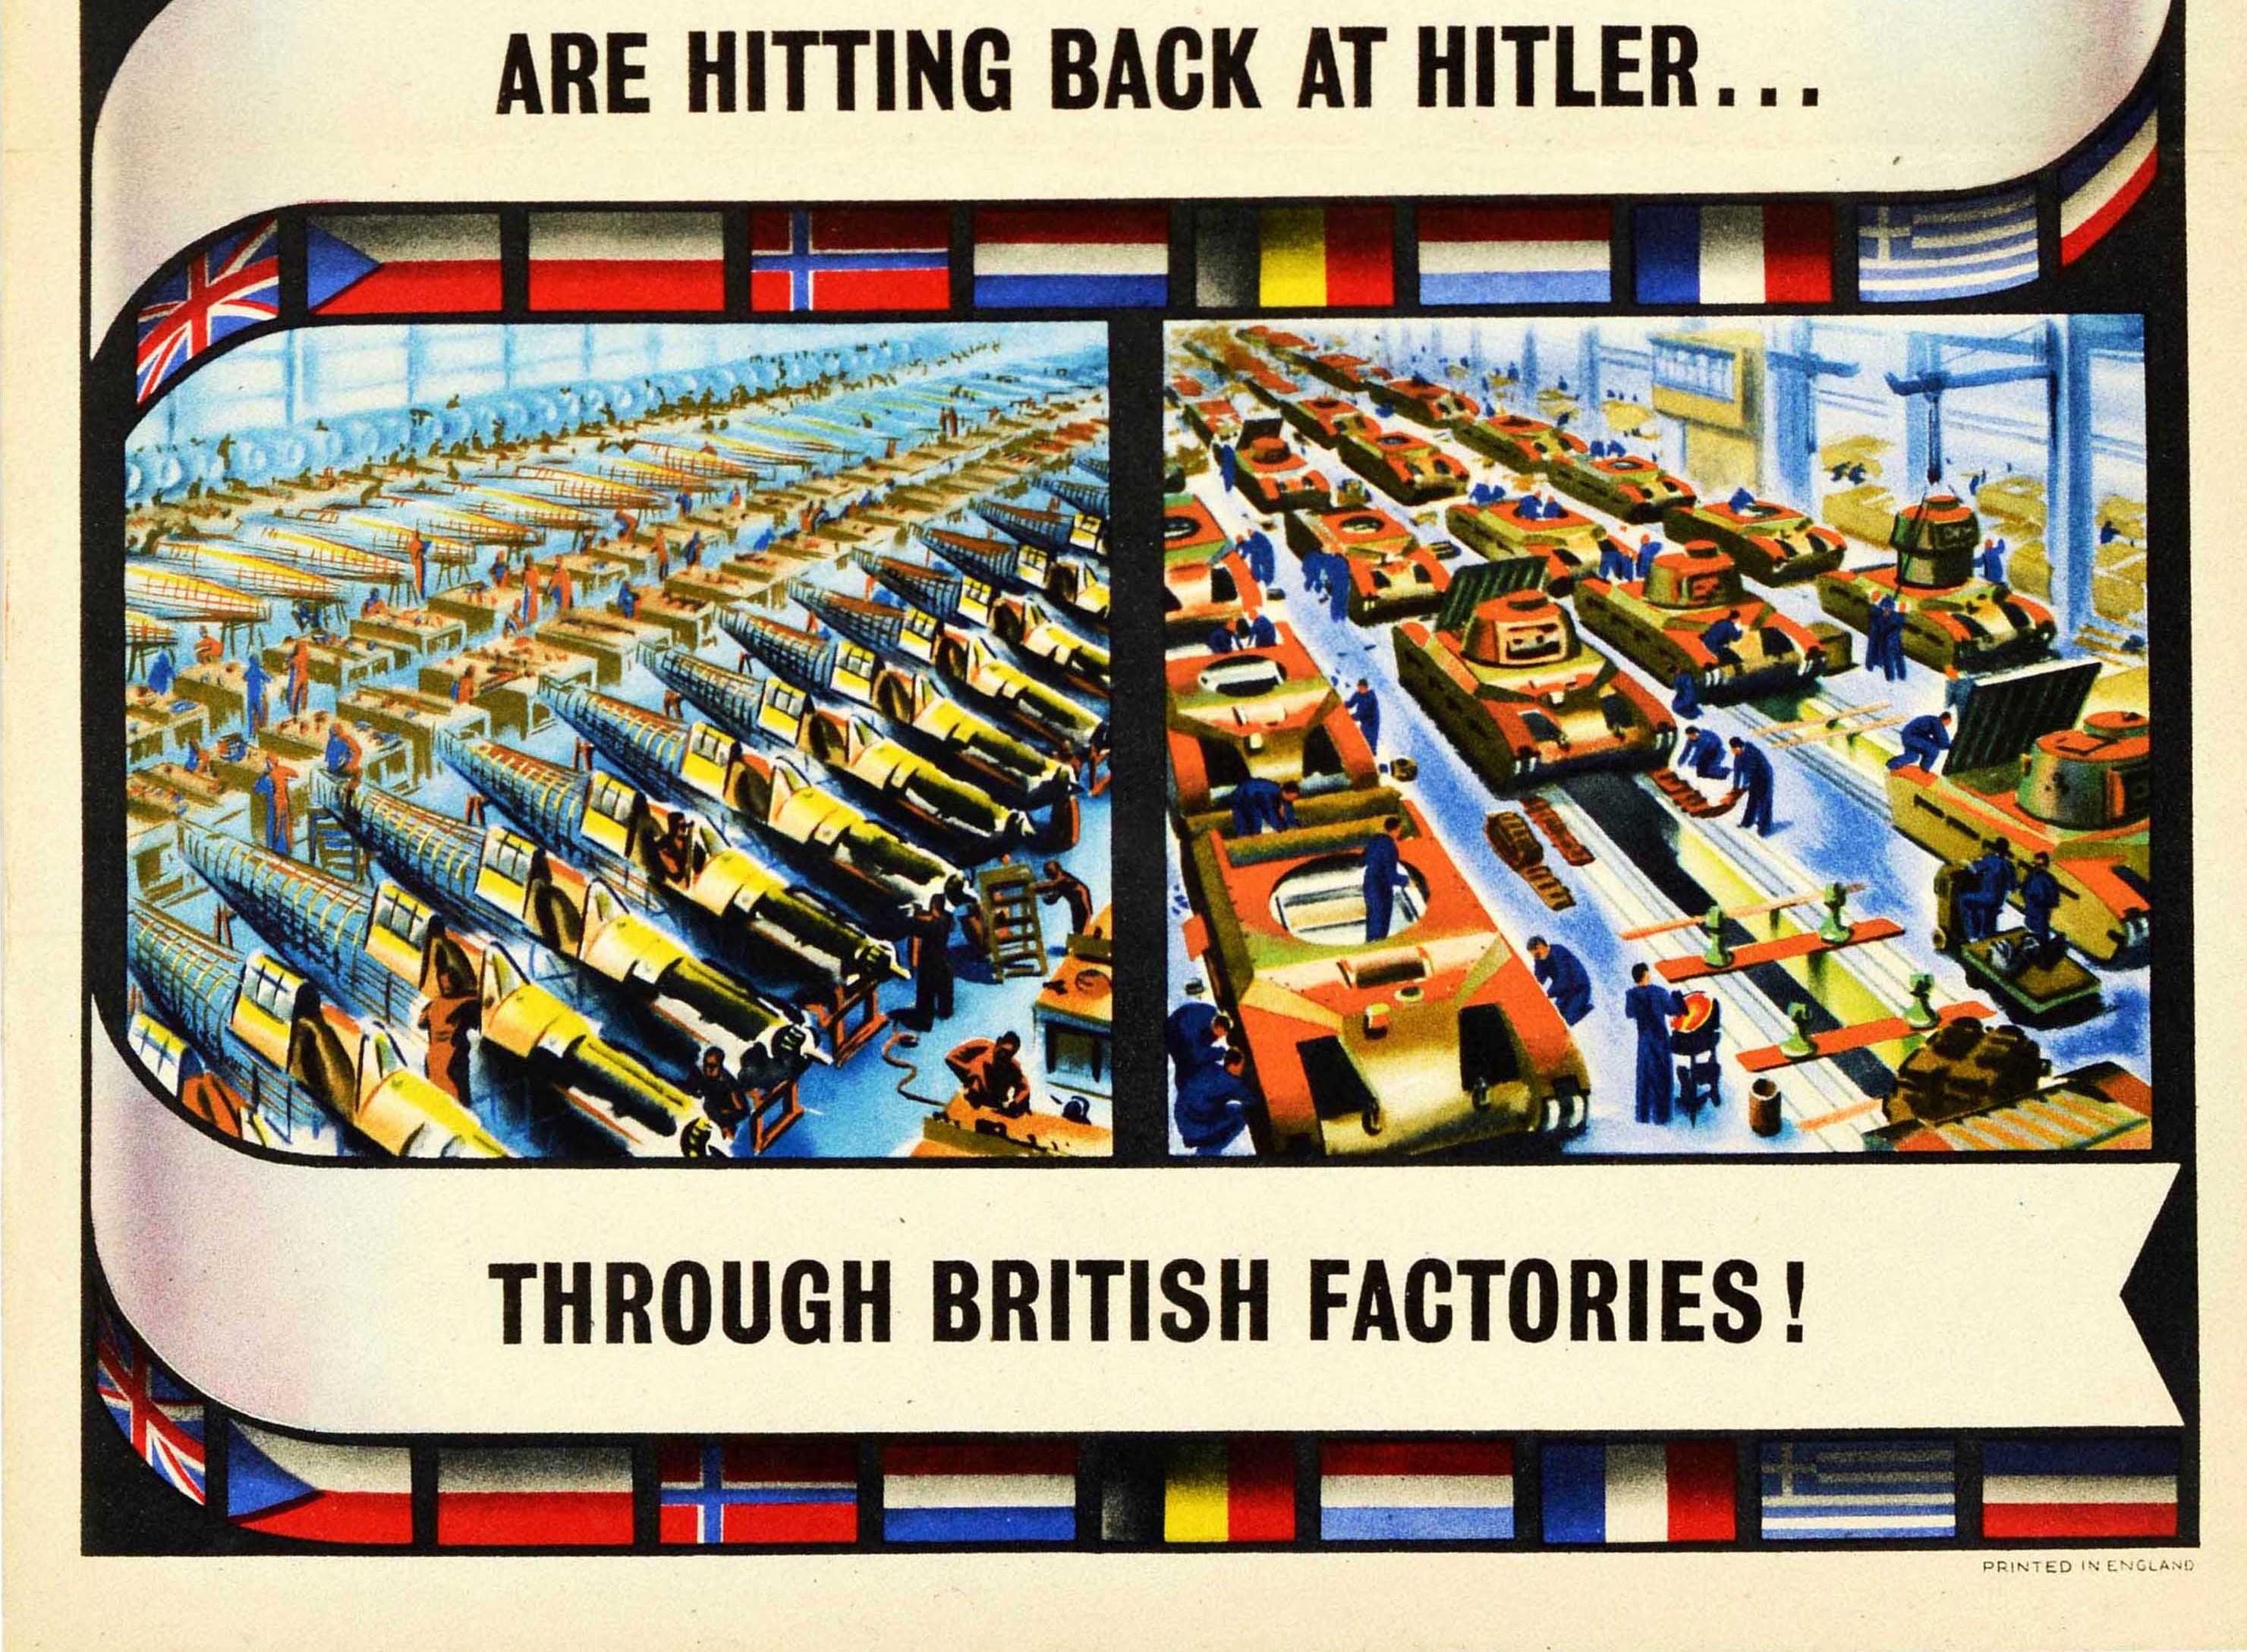 Originales Propagandaplakat aus dem Zweiten Weltkrieg - Munitionsarbeiter der alliierten Länder... Sie schlagen auf Hitler zurück... Durch britische Fabriken! Die beiden oberen Bilder zeigen Luft- und Bodenkampfszenen mit einem Flugzeug der Royal